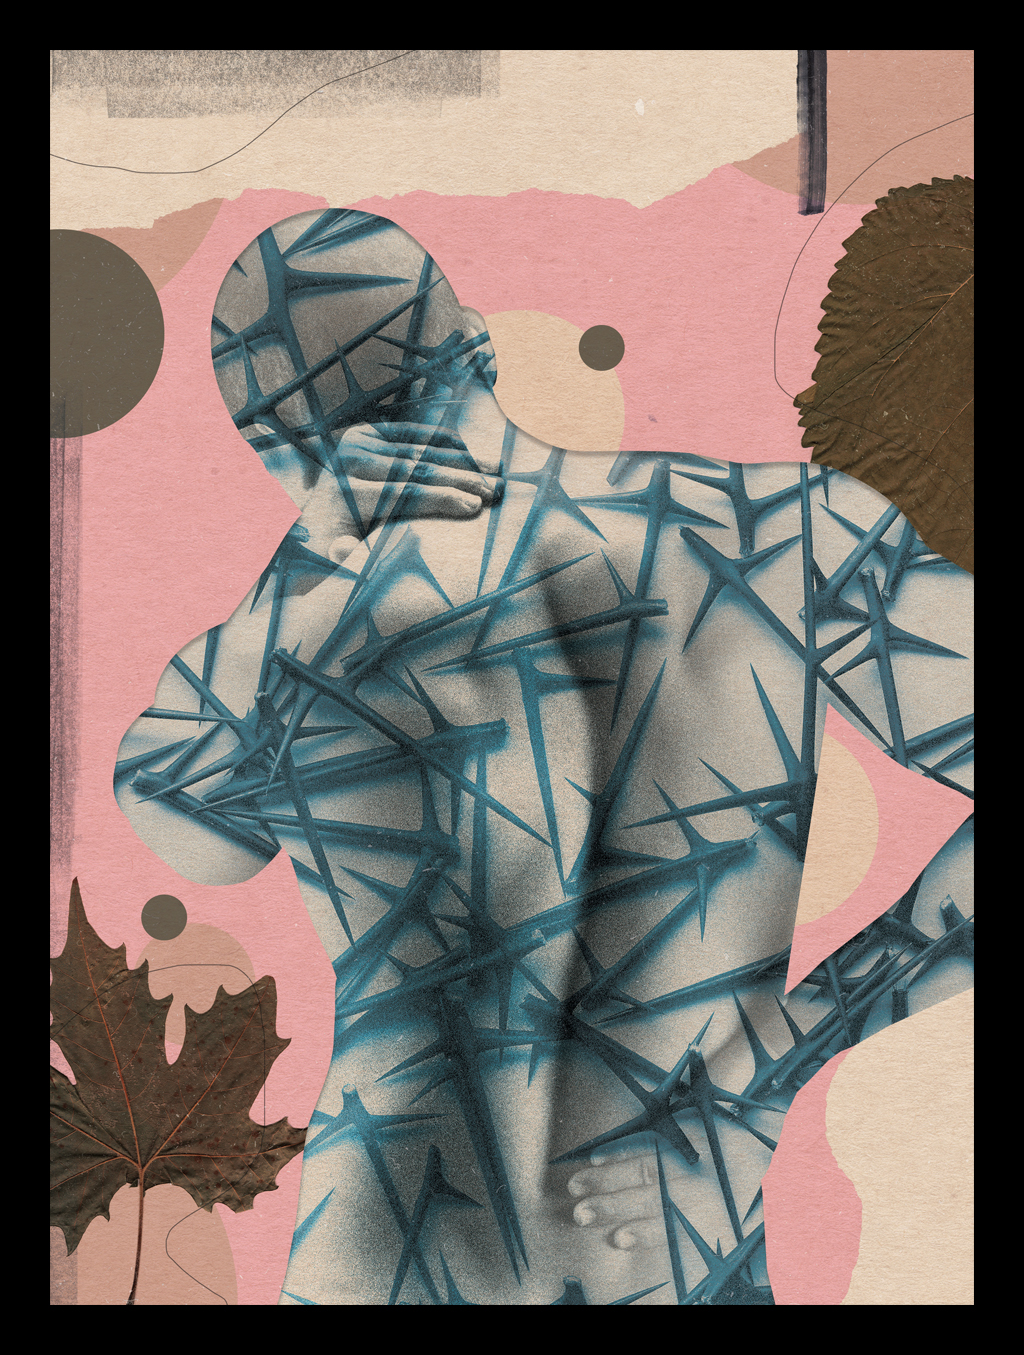 Colagem de silhueta de pessoa com textura de espinhos representando a imunidade atacando o próprio corpo.